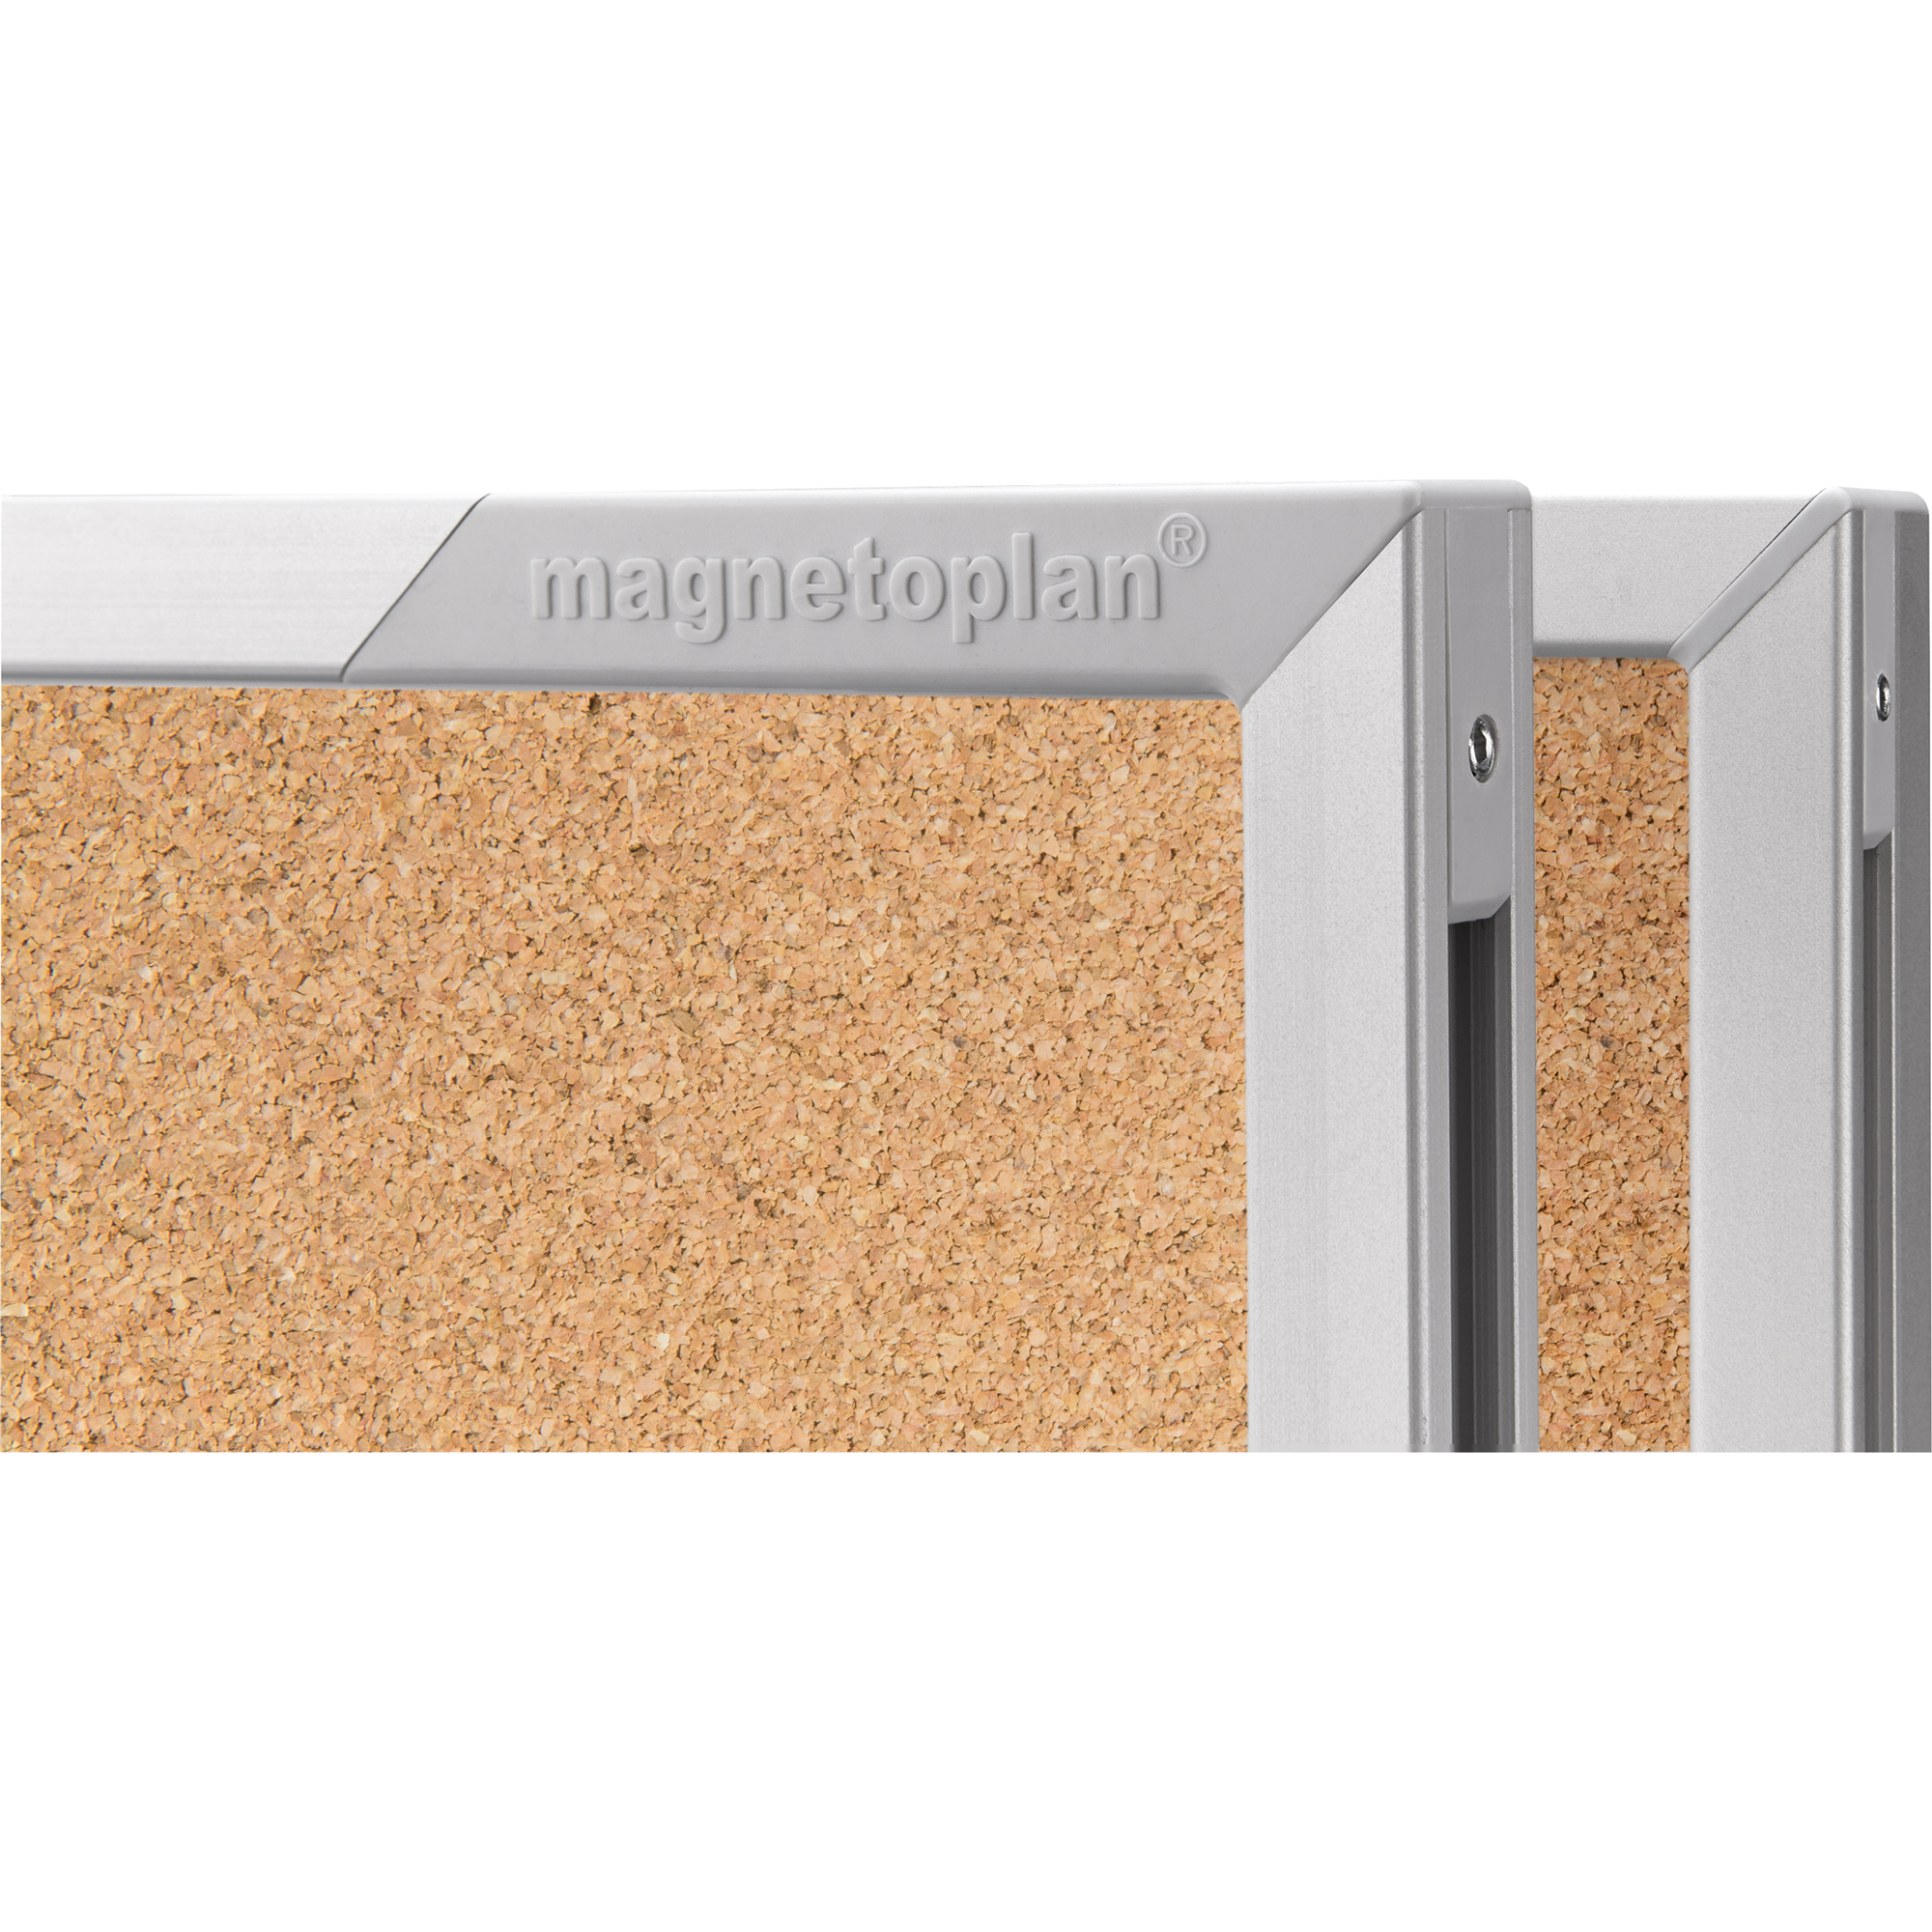 magnetoplan® Schaukasten SP mit Kork 112 x 108,5 x 4 cm (B x H x T)